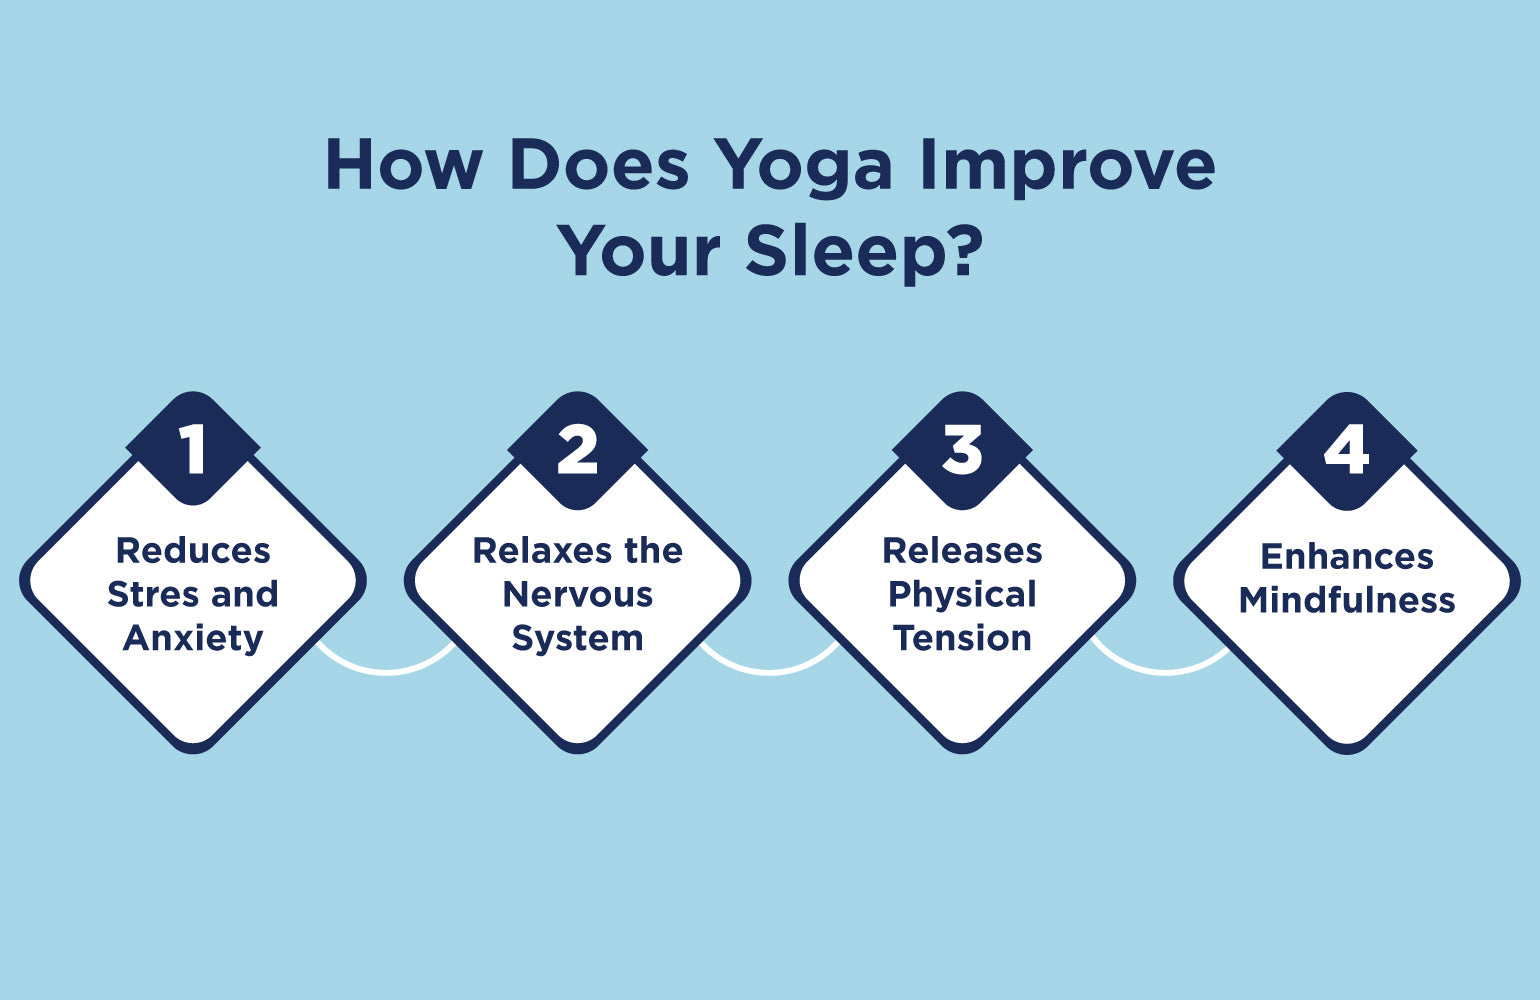 How Does Yoga Improve Your Sleep?